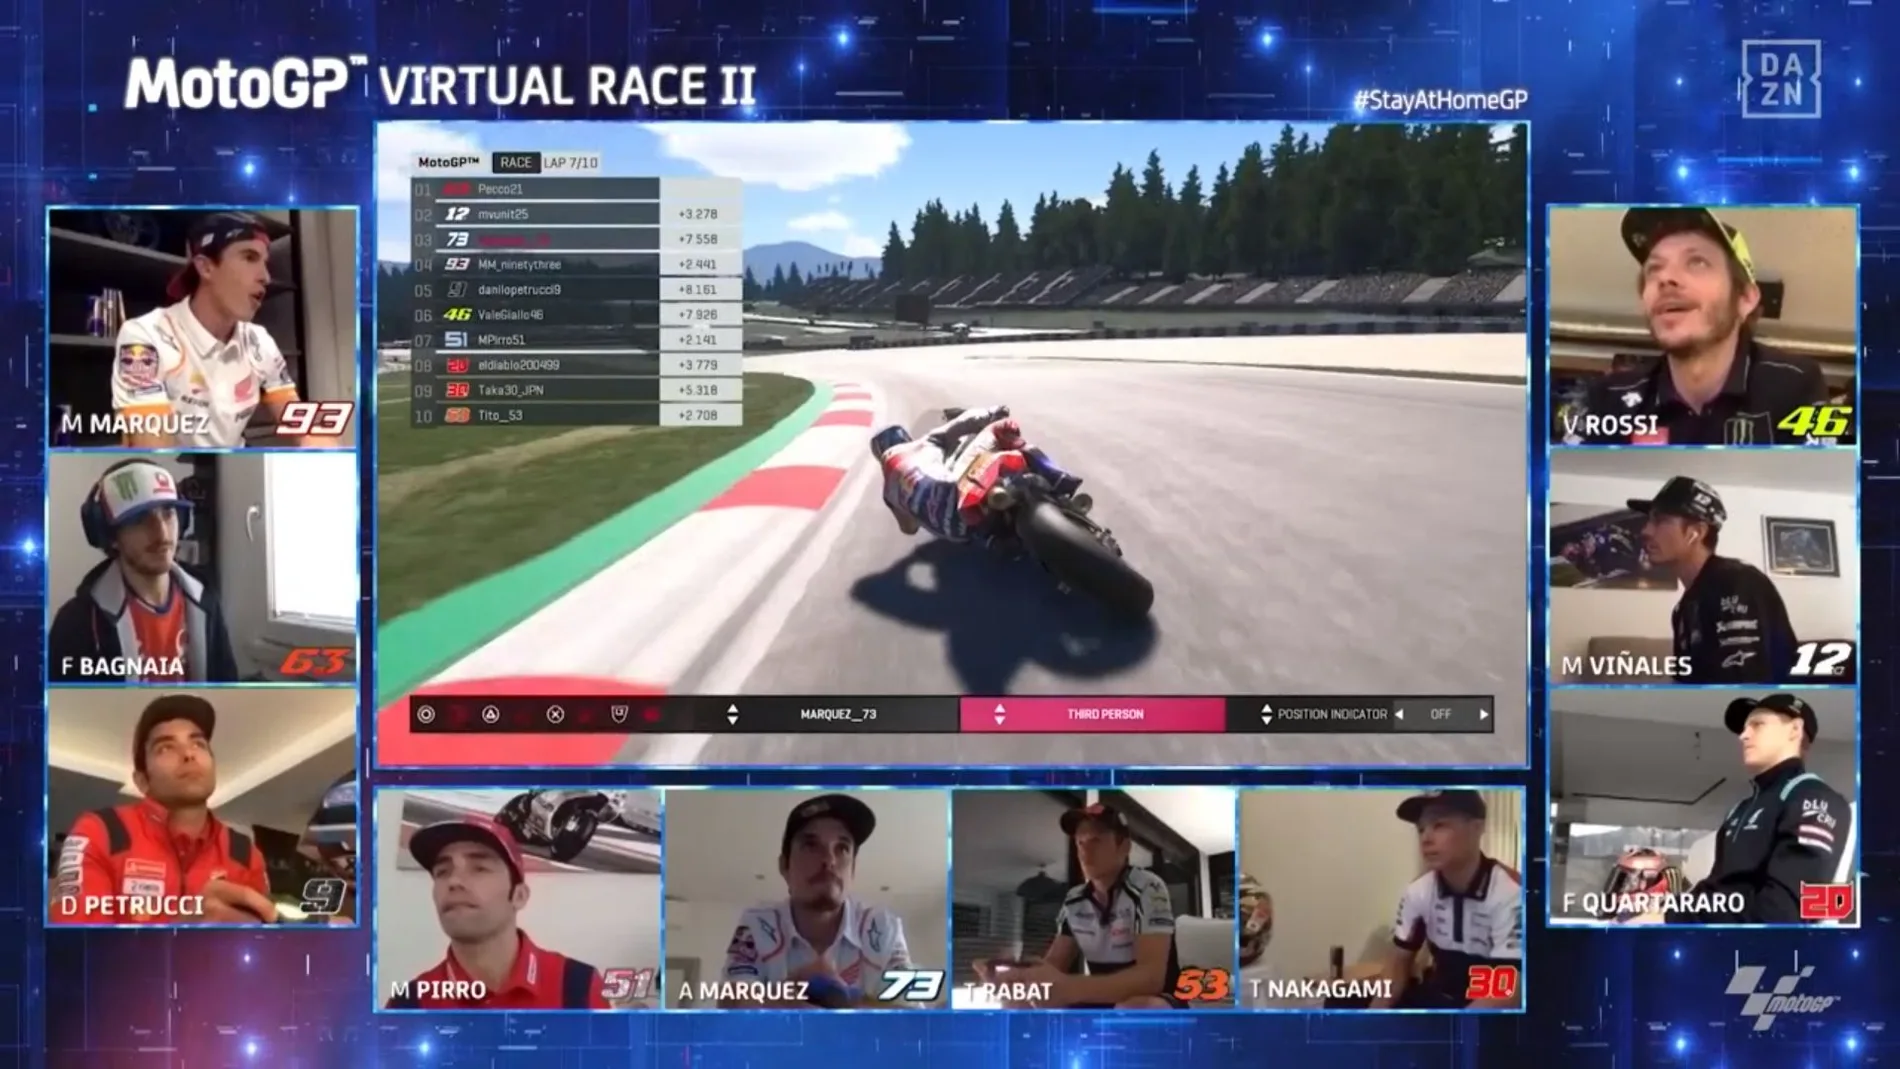 MotoGP Virtual Race II